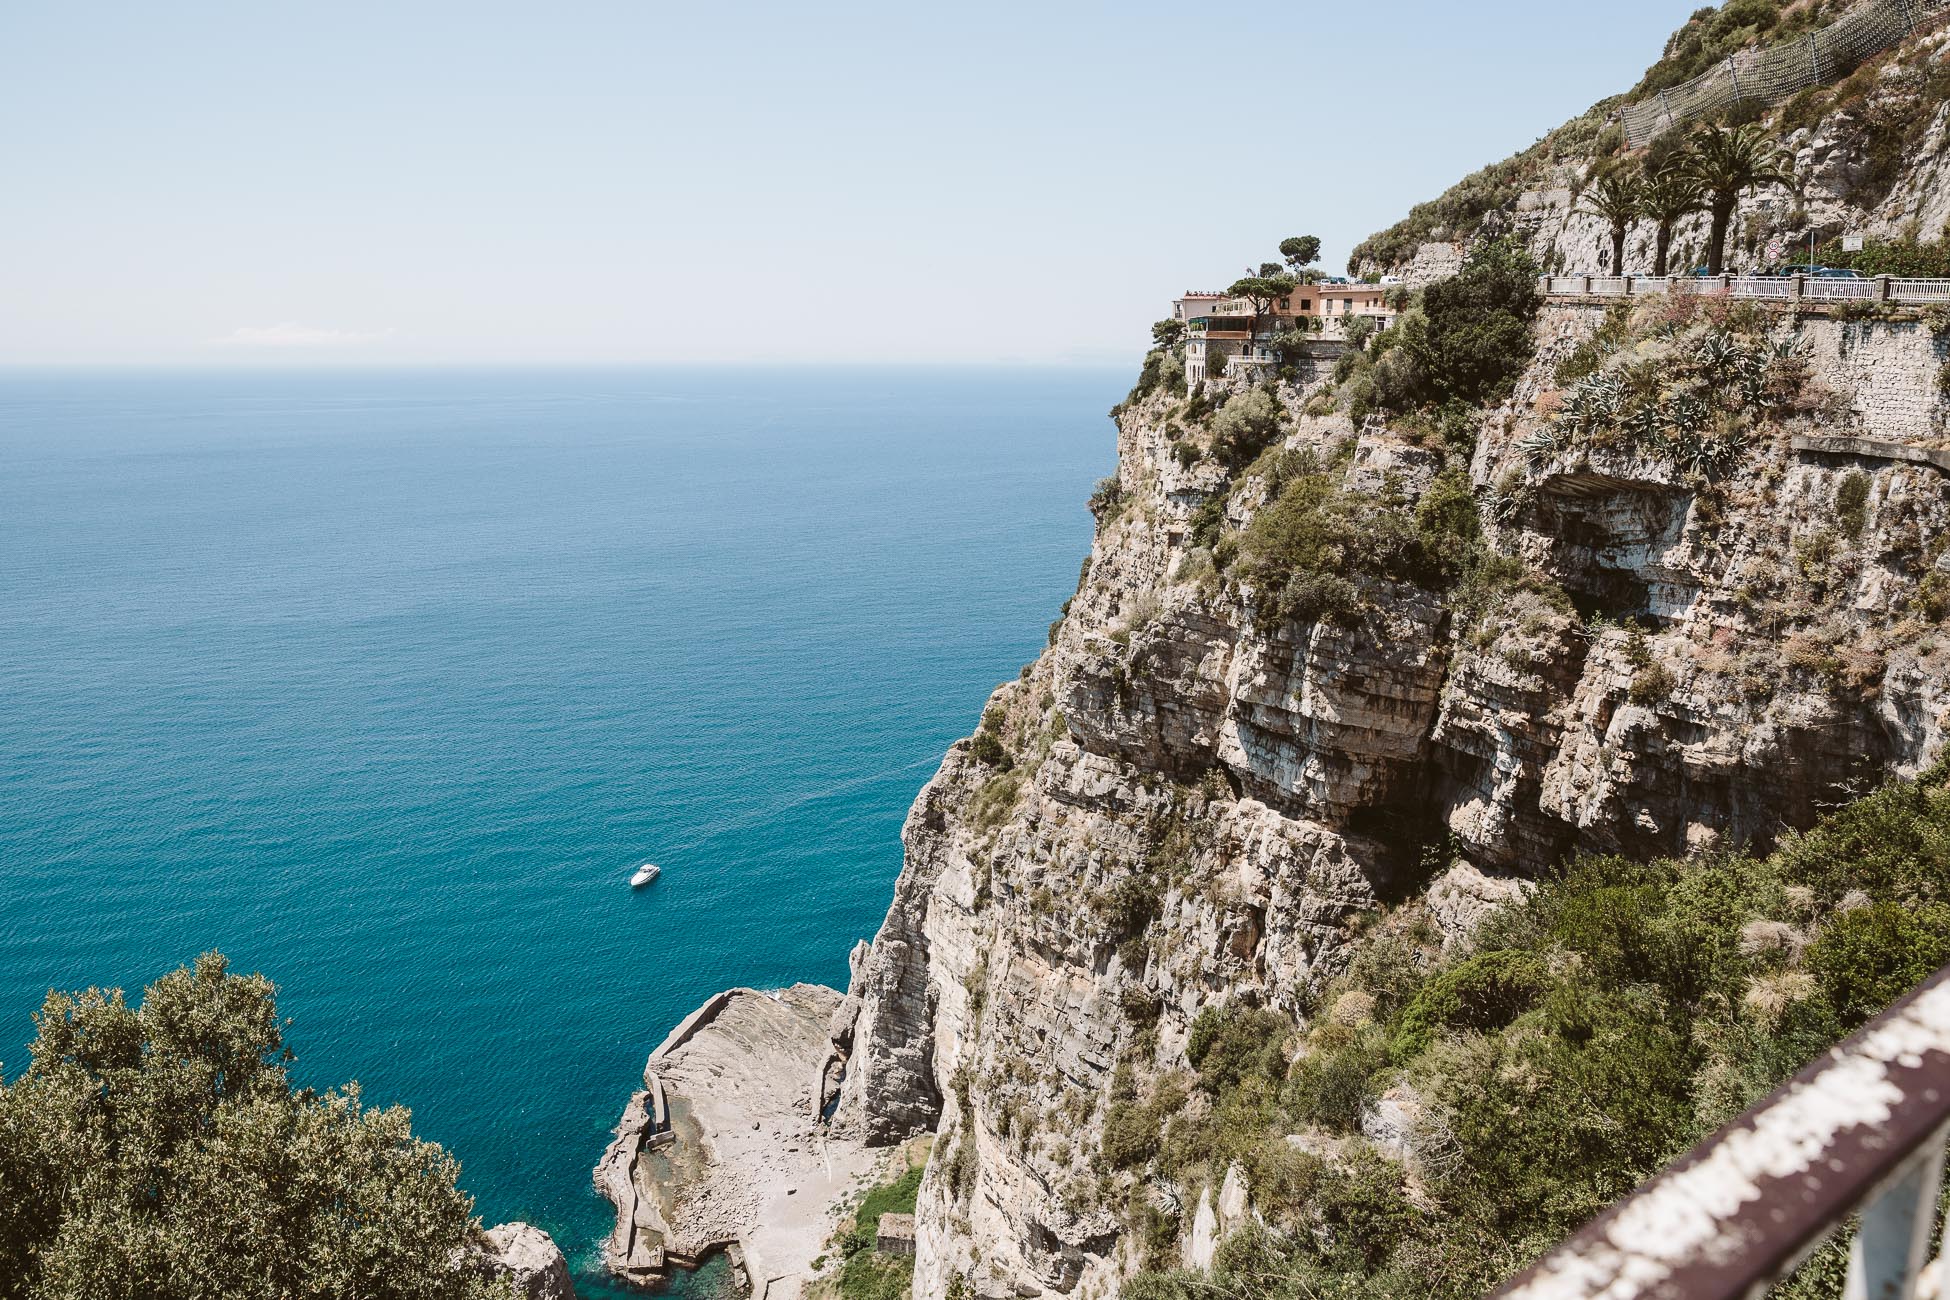 Sorrento Coast as seen from the coastal road